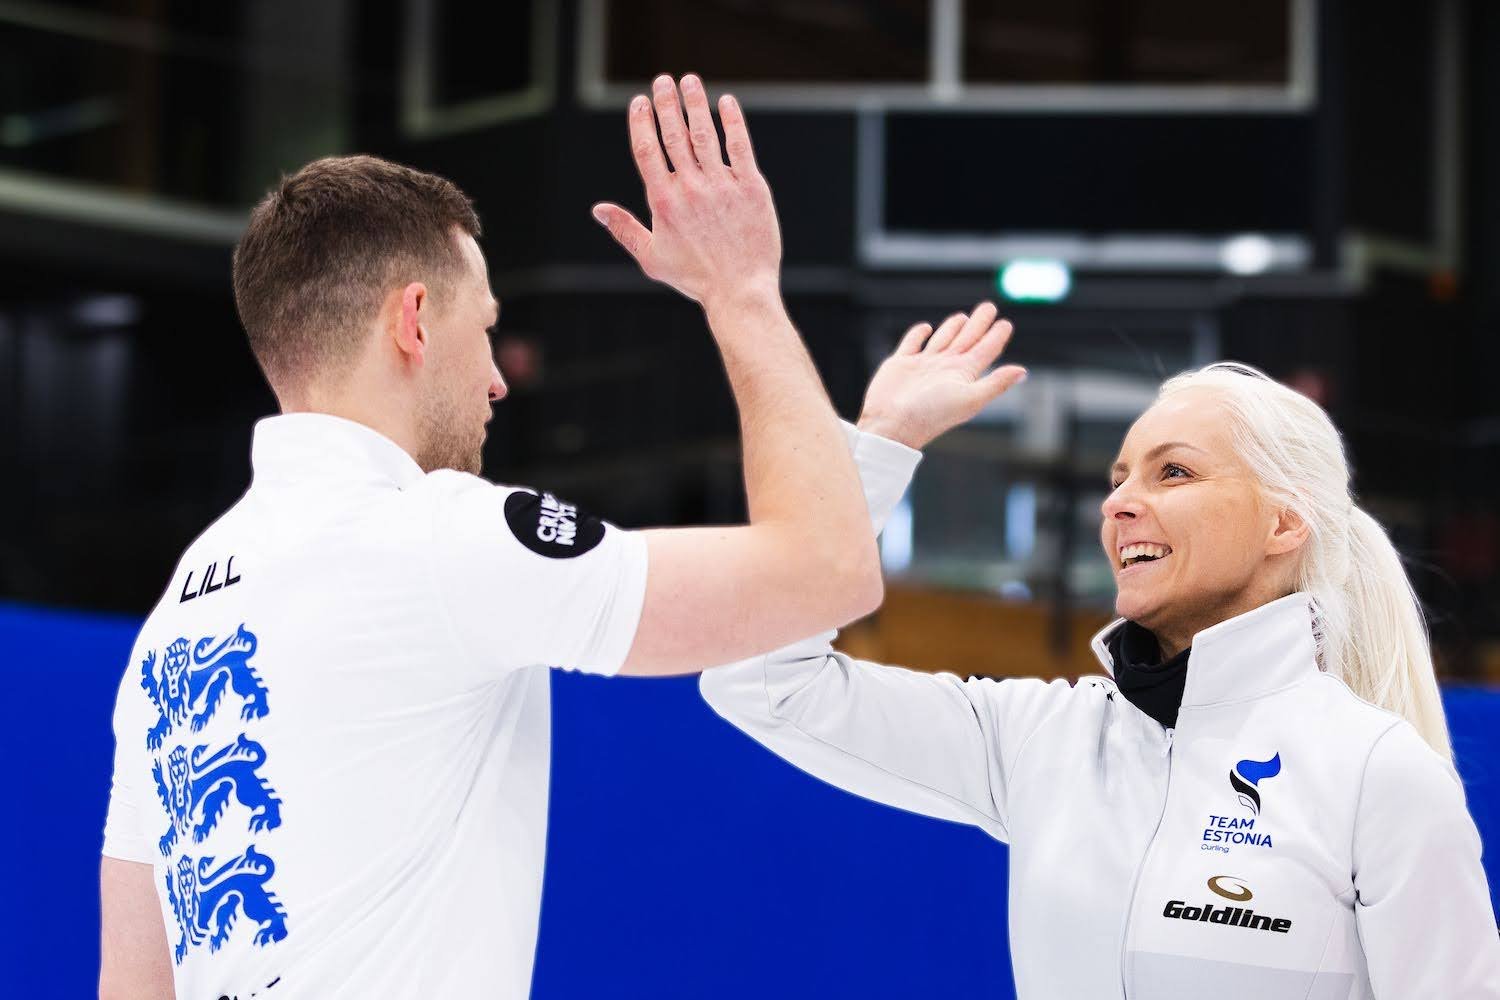 Эстонская пара Калдвеэ и Лилль завоевала на чемпионате мира по керлингу историческую медаль